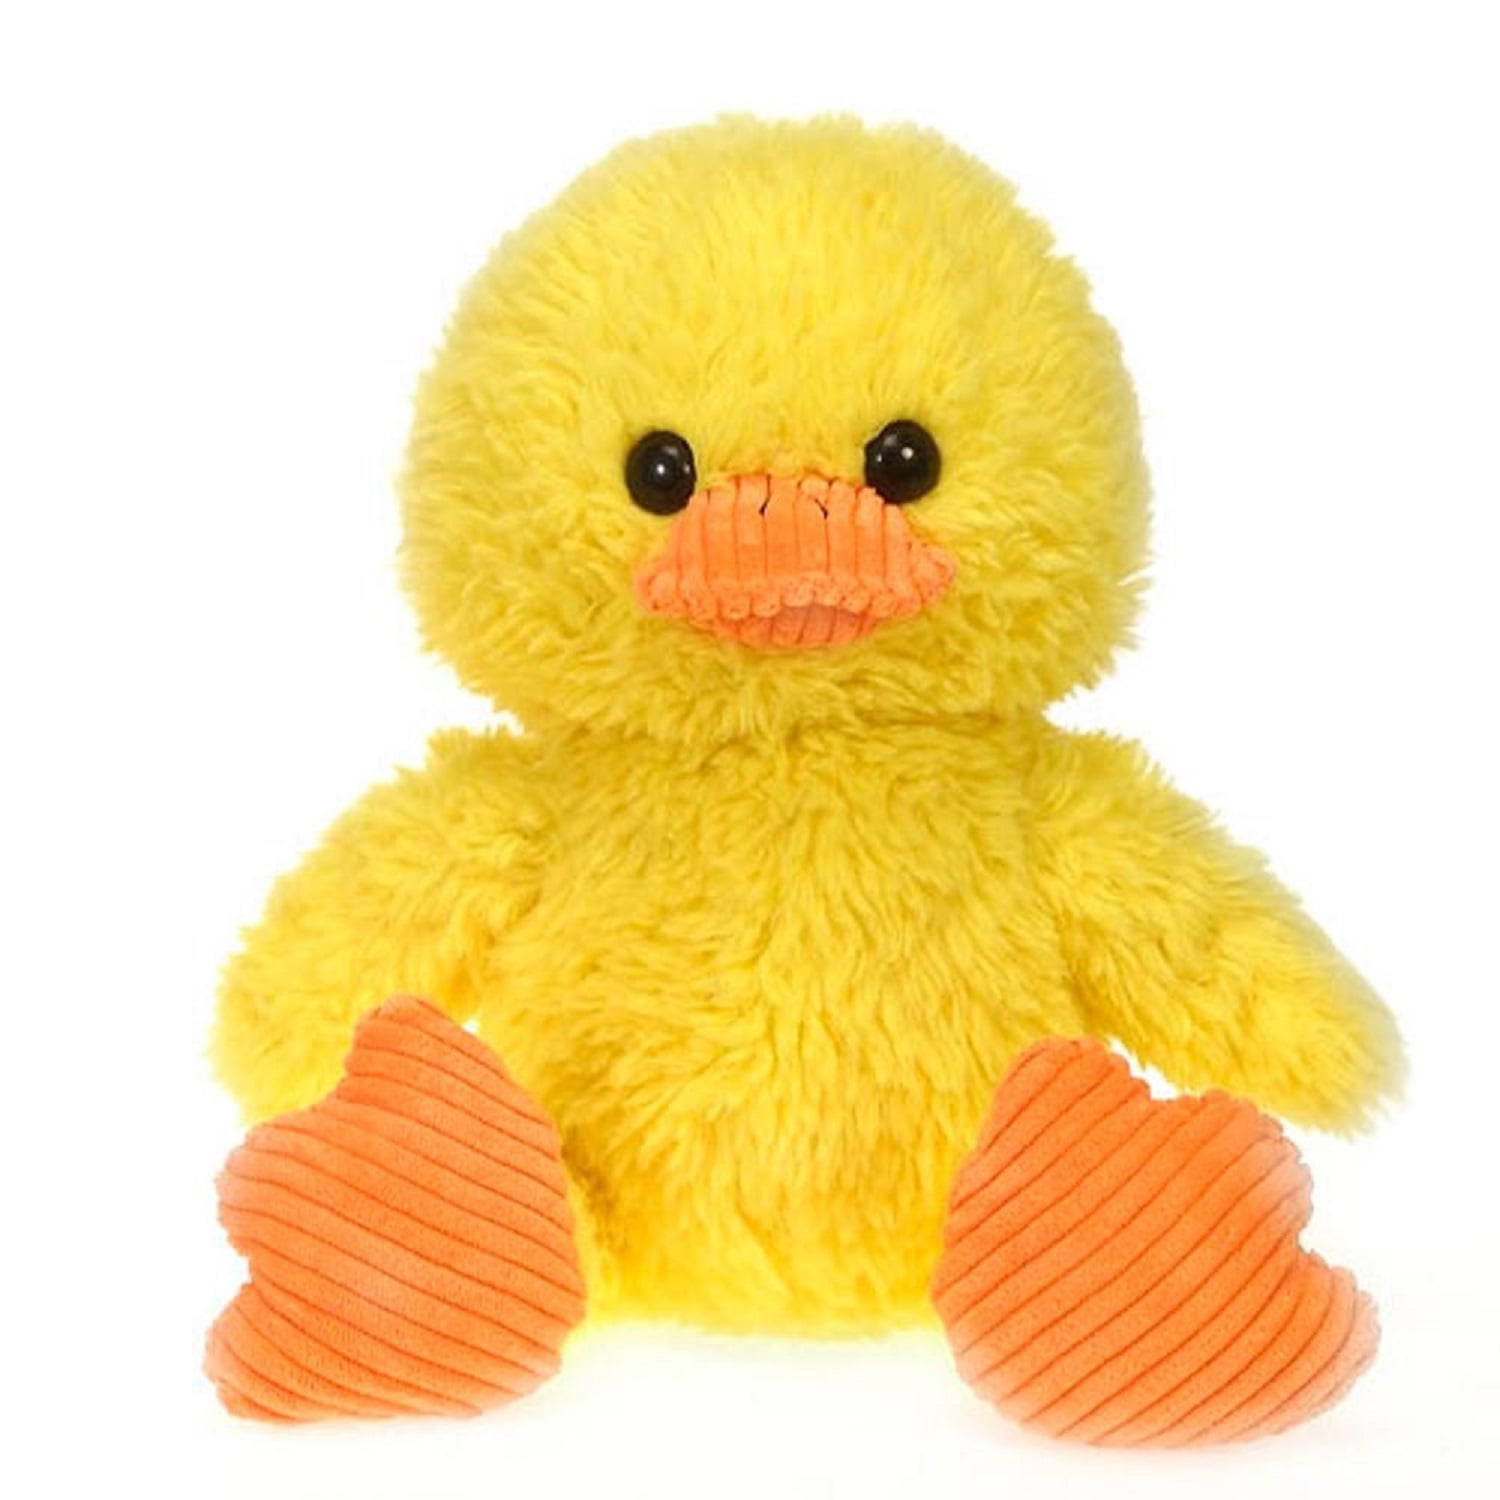 yellow duck stuffed animal